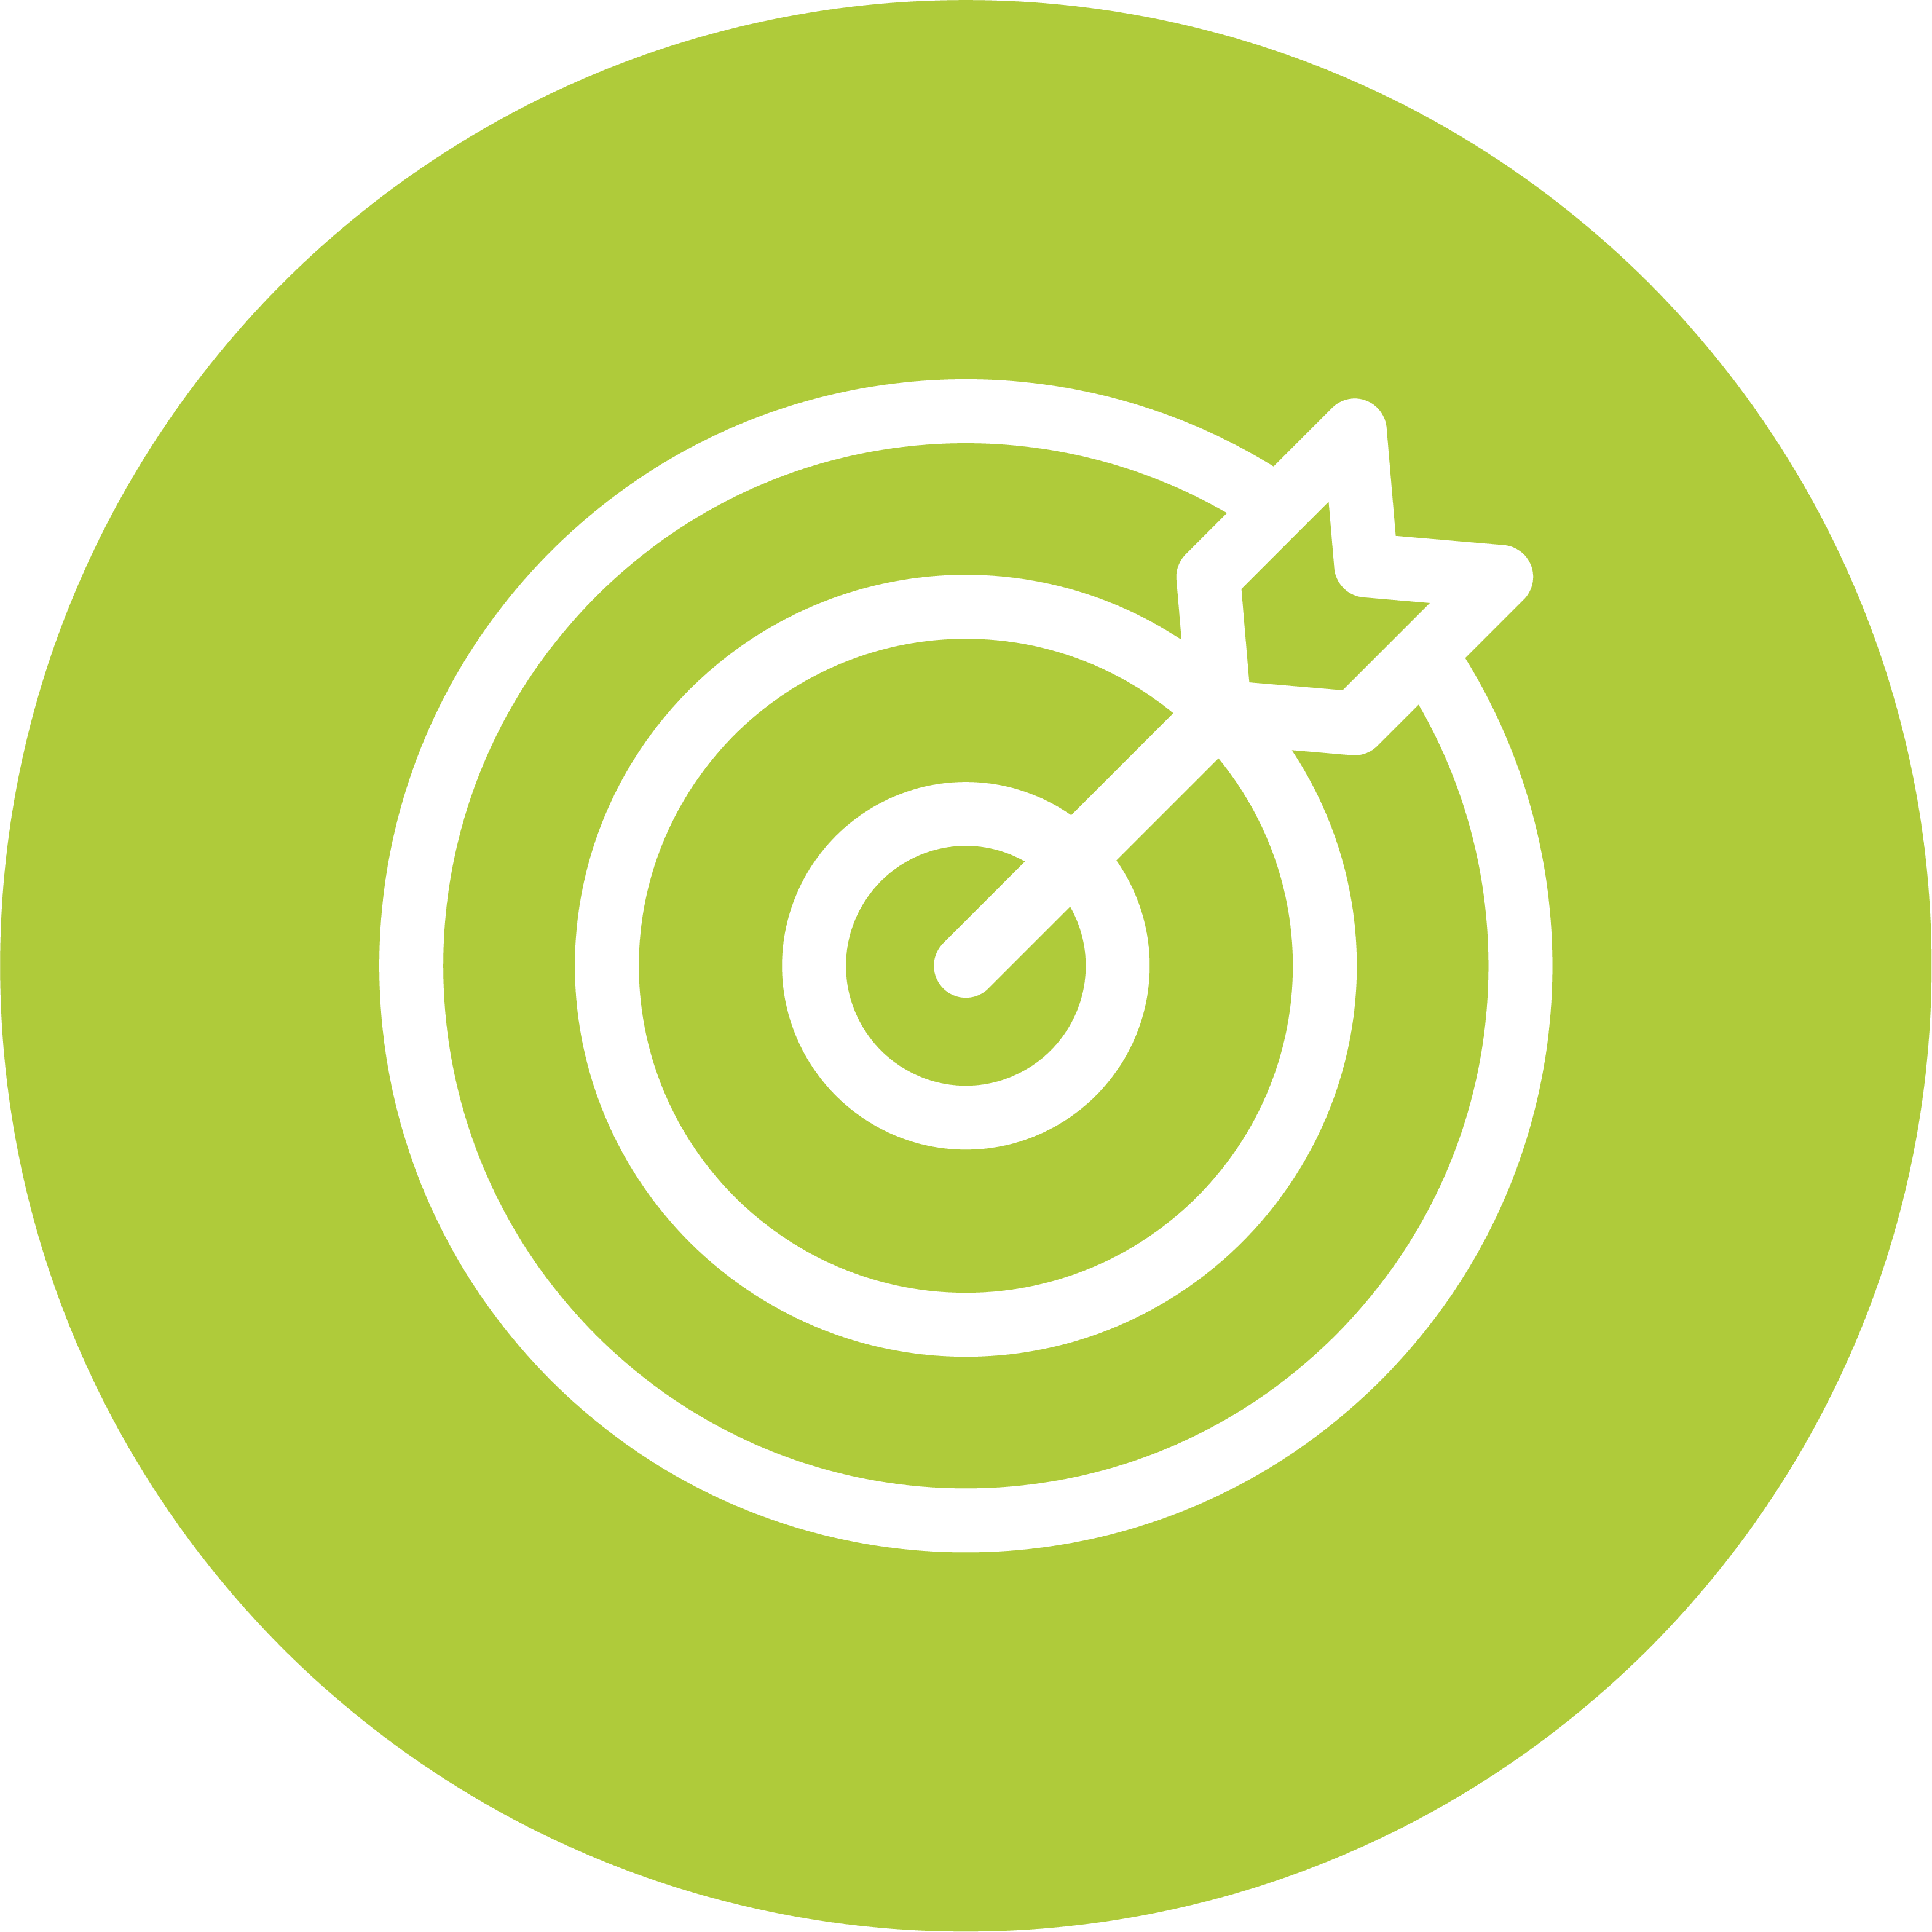 Grüner Kreis mit weißer Zielscheibe und Pfeil in der Mitte auf transparentem Hintergrund, symbolisch für Zielsystem und Bonus.